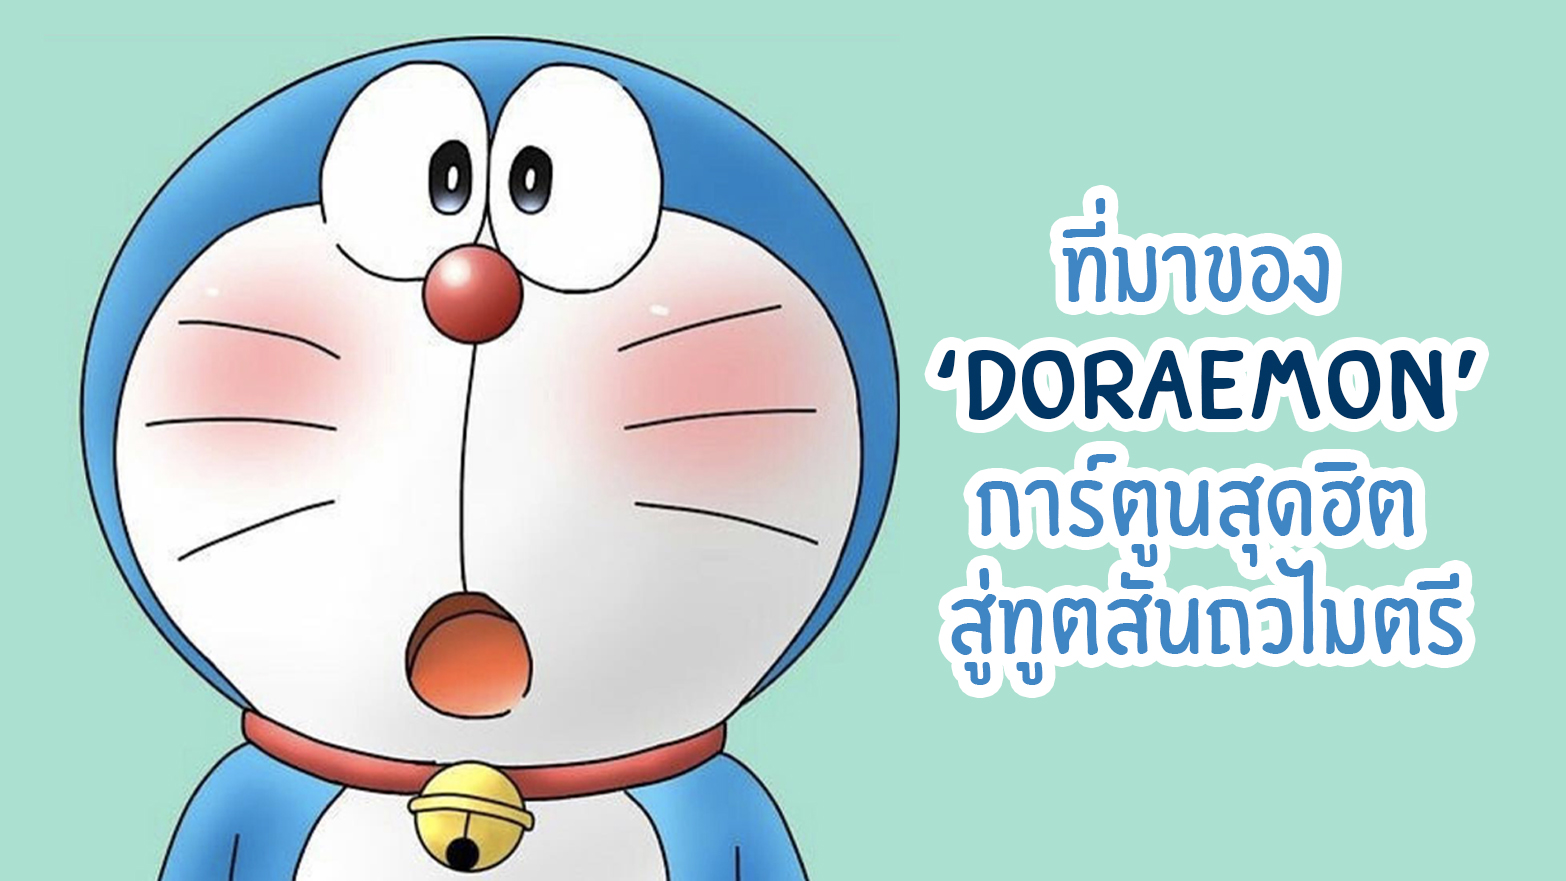 ที่มาของ 'Doraemon' การ์ตูนสุดฮิต สู่ทูตสันถวไมตรี